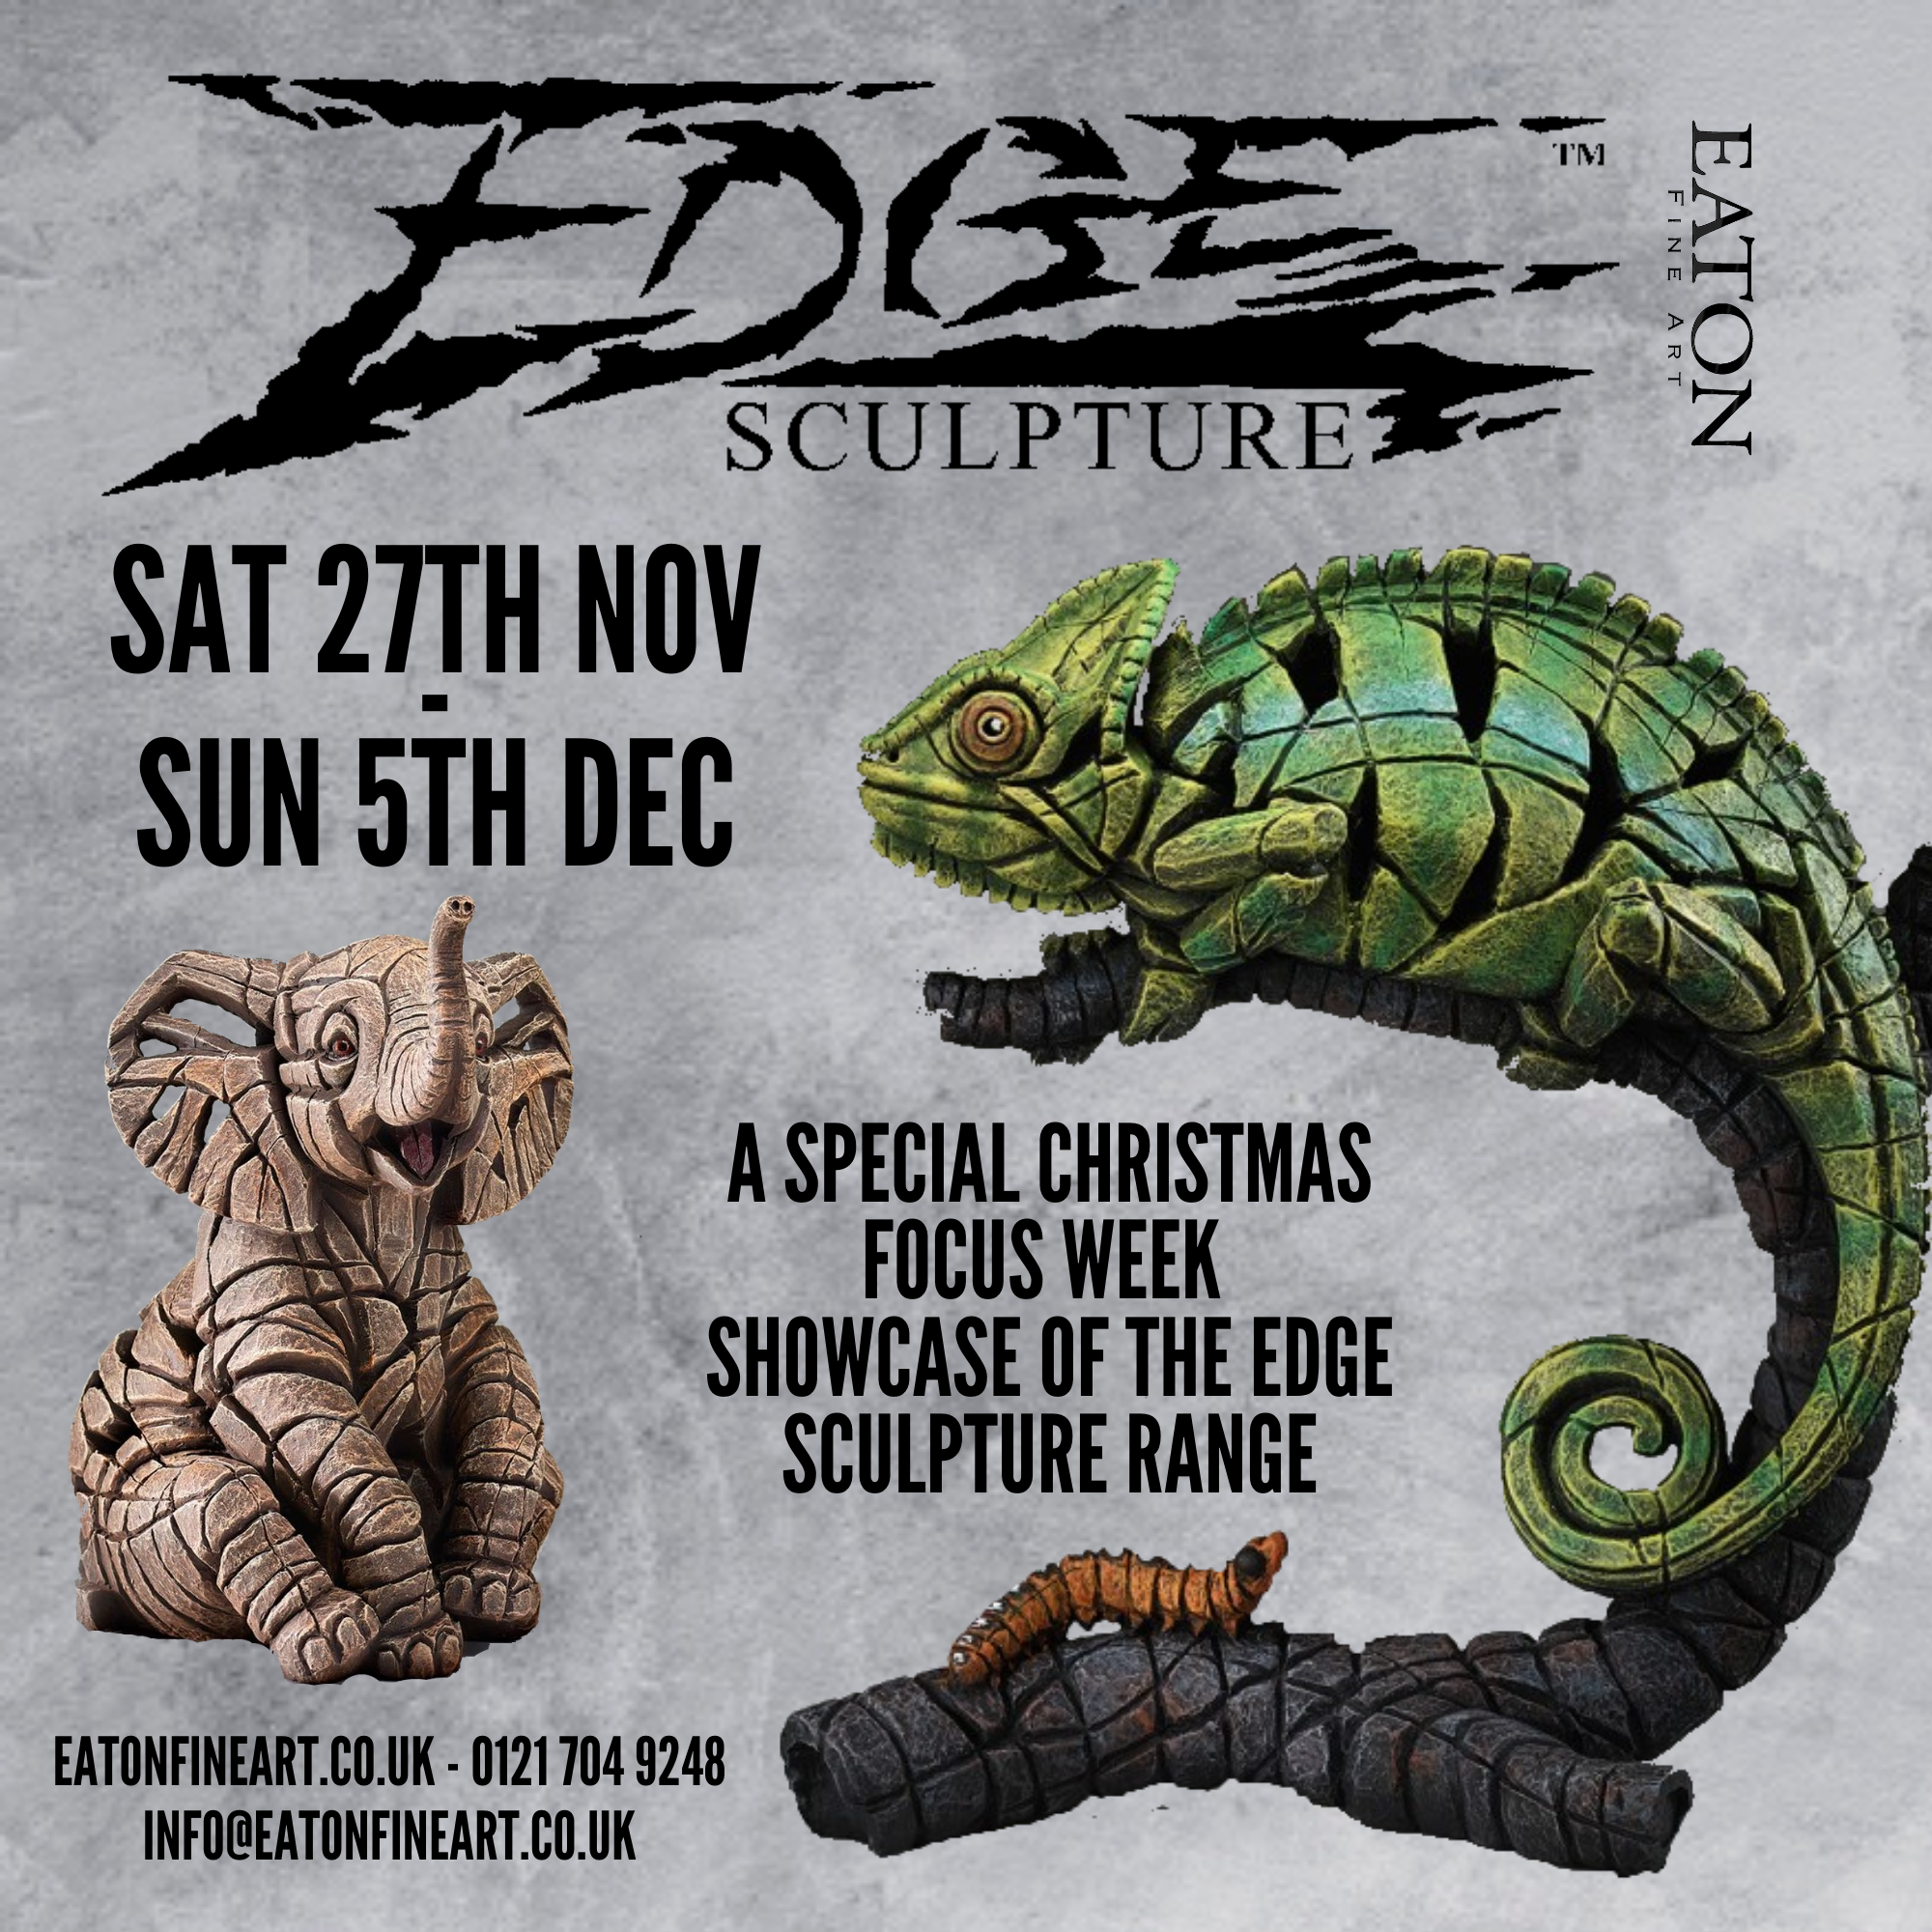 Edge Sculpture Week – Sat 27th Nov – Sun 5th Dec